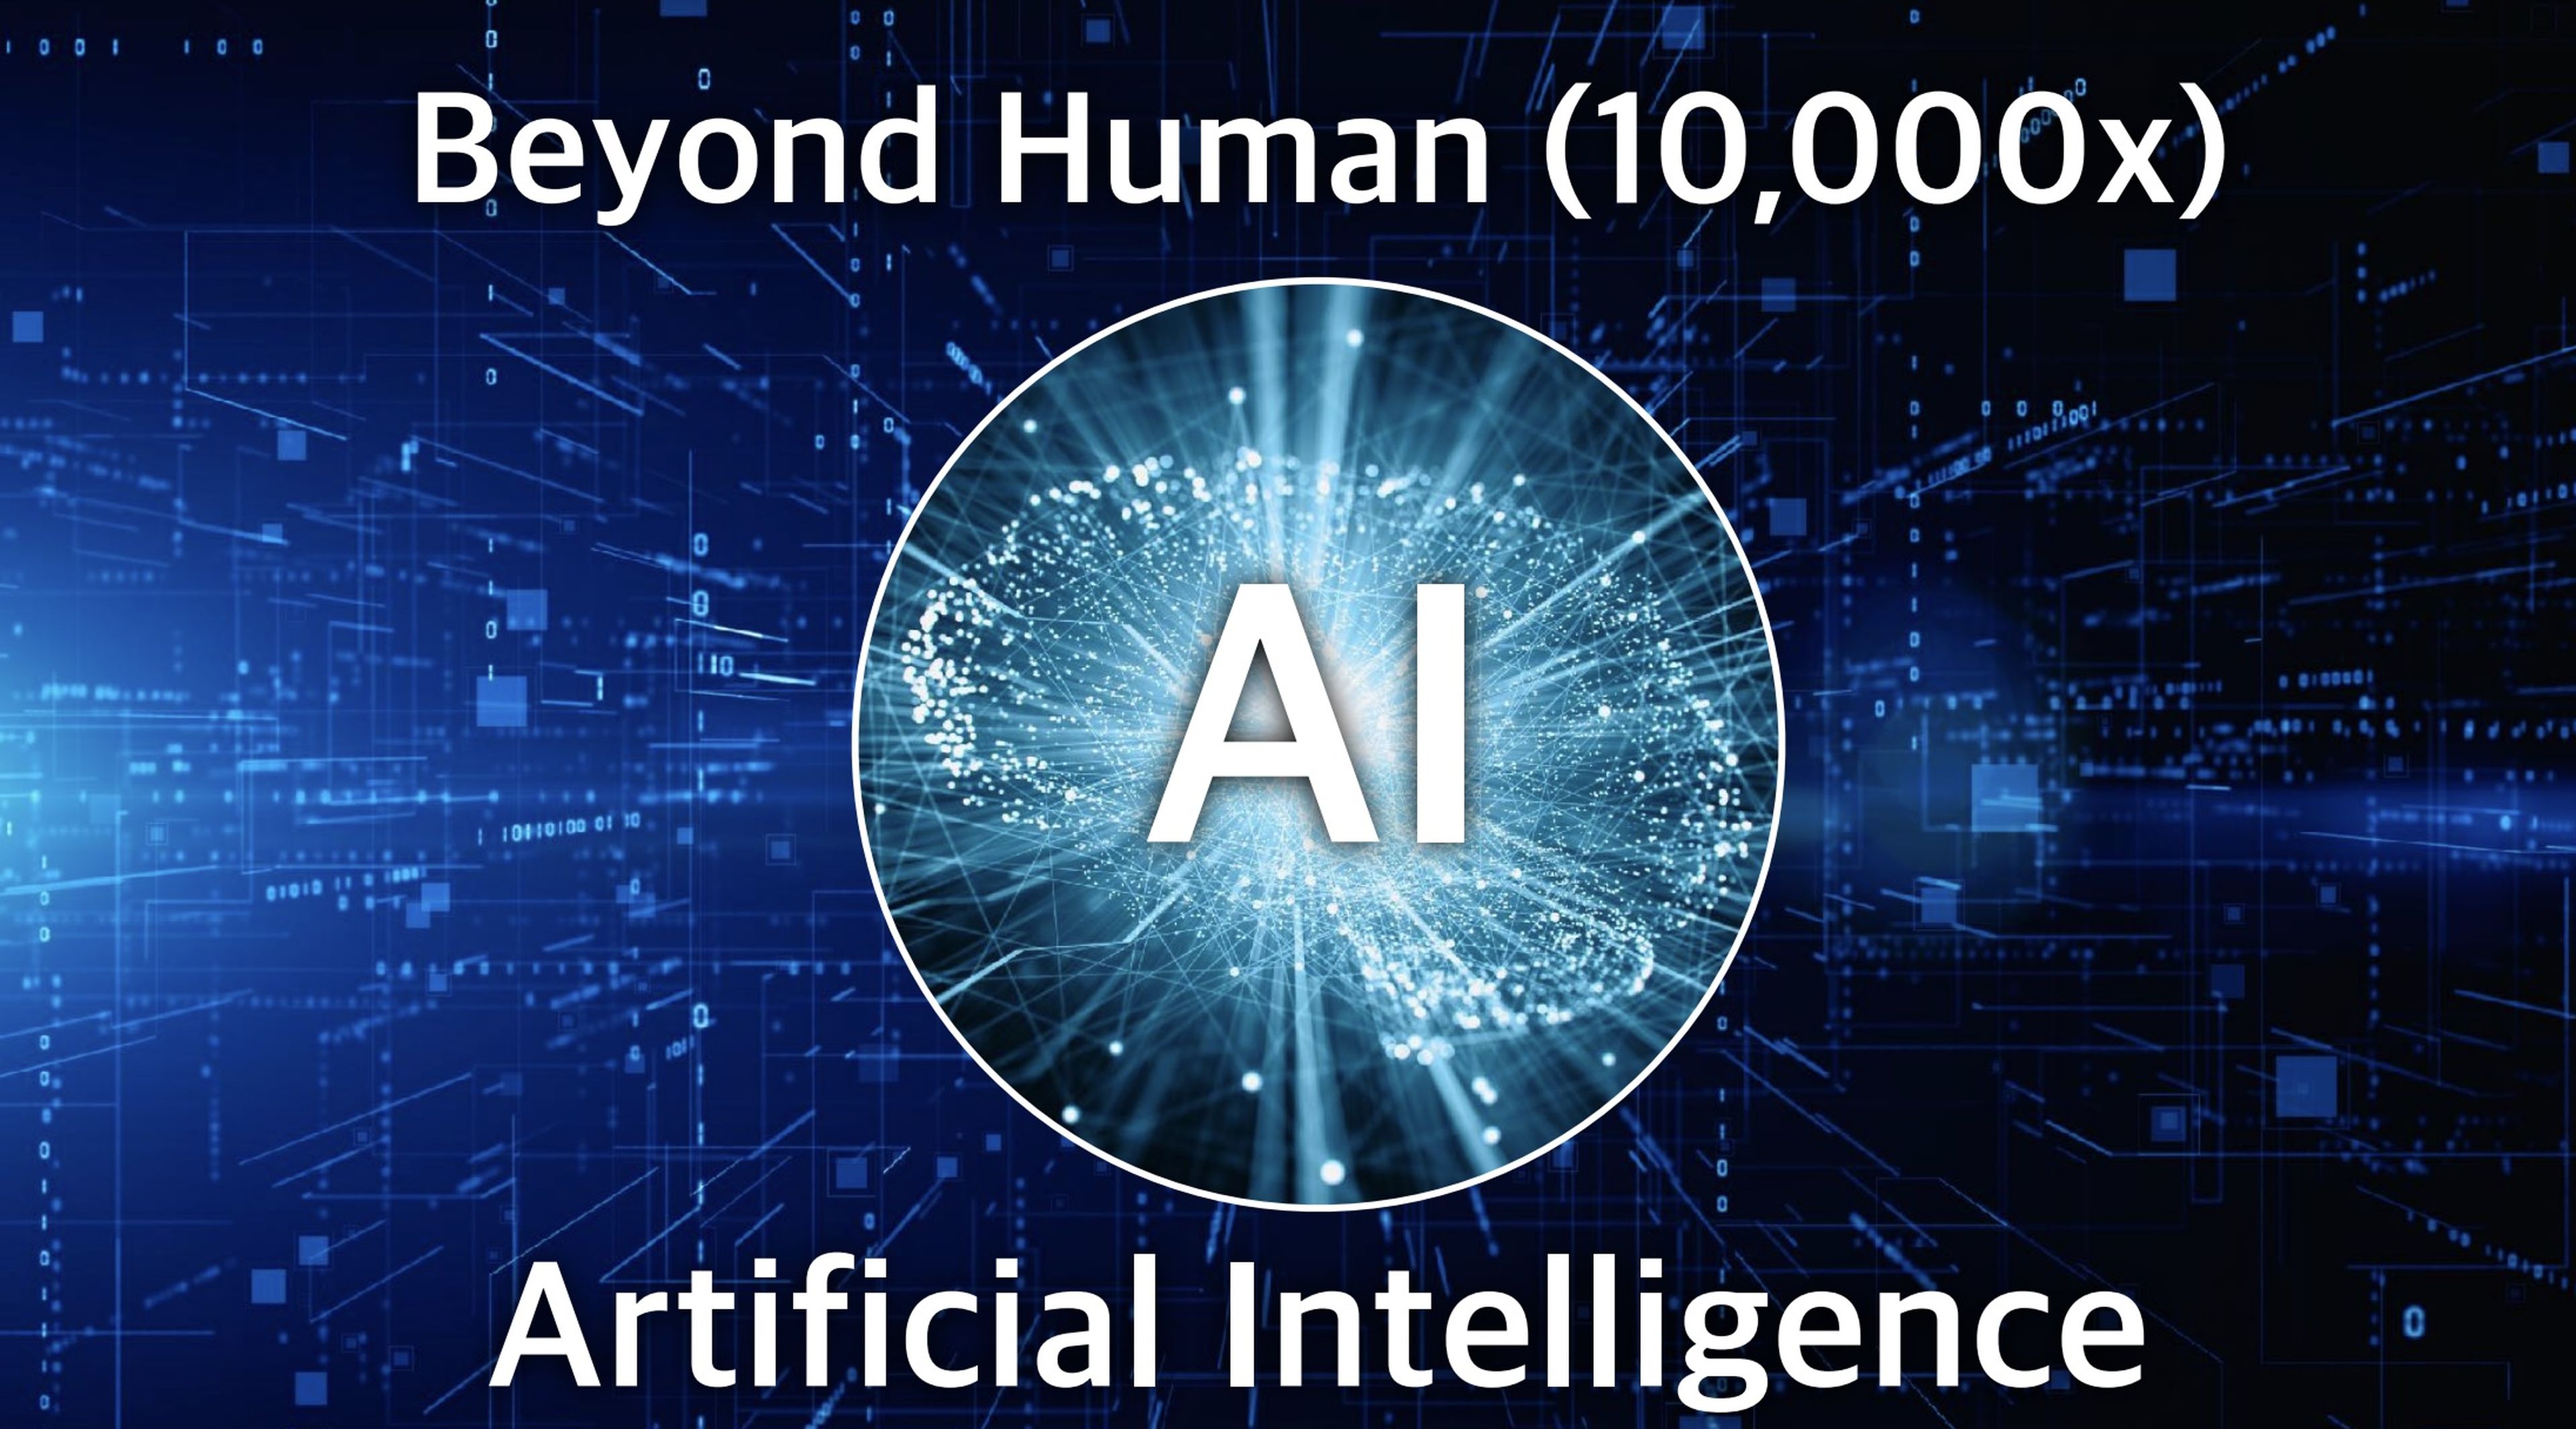  Son dice que la IA potenciará las capacidades humanas.